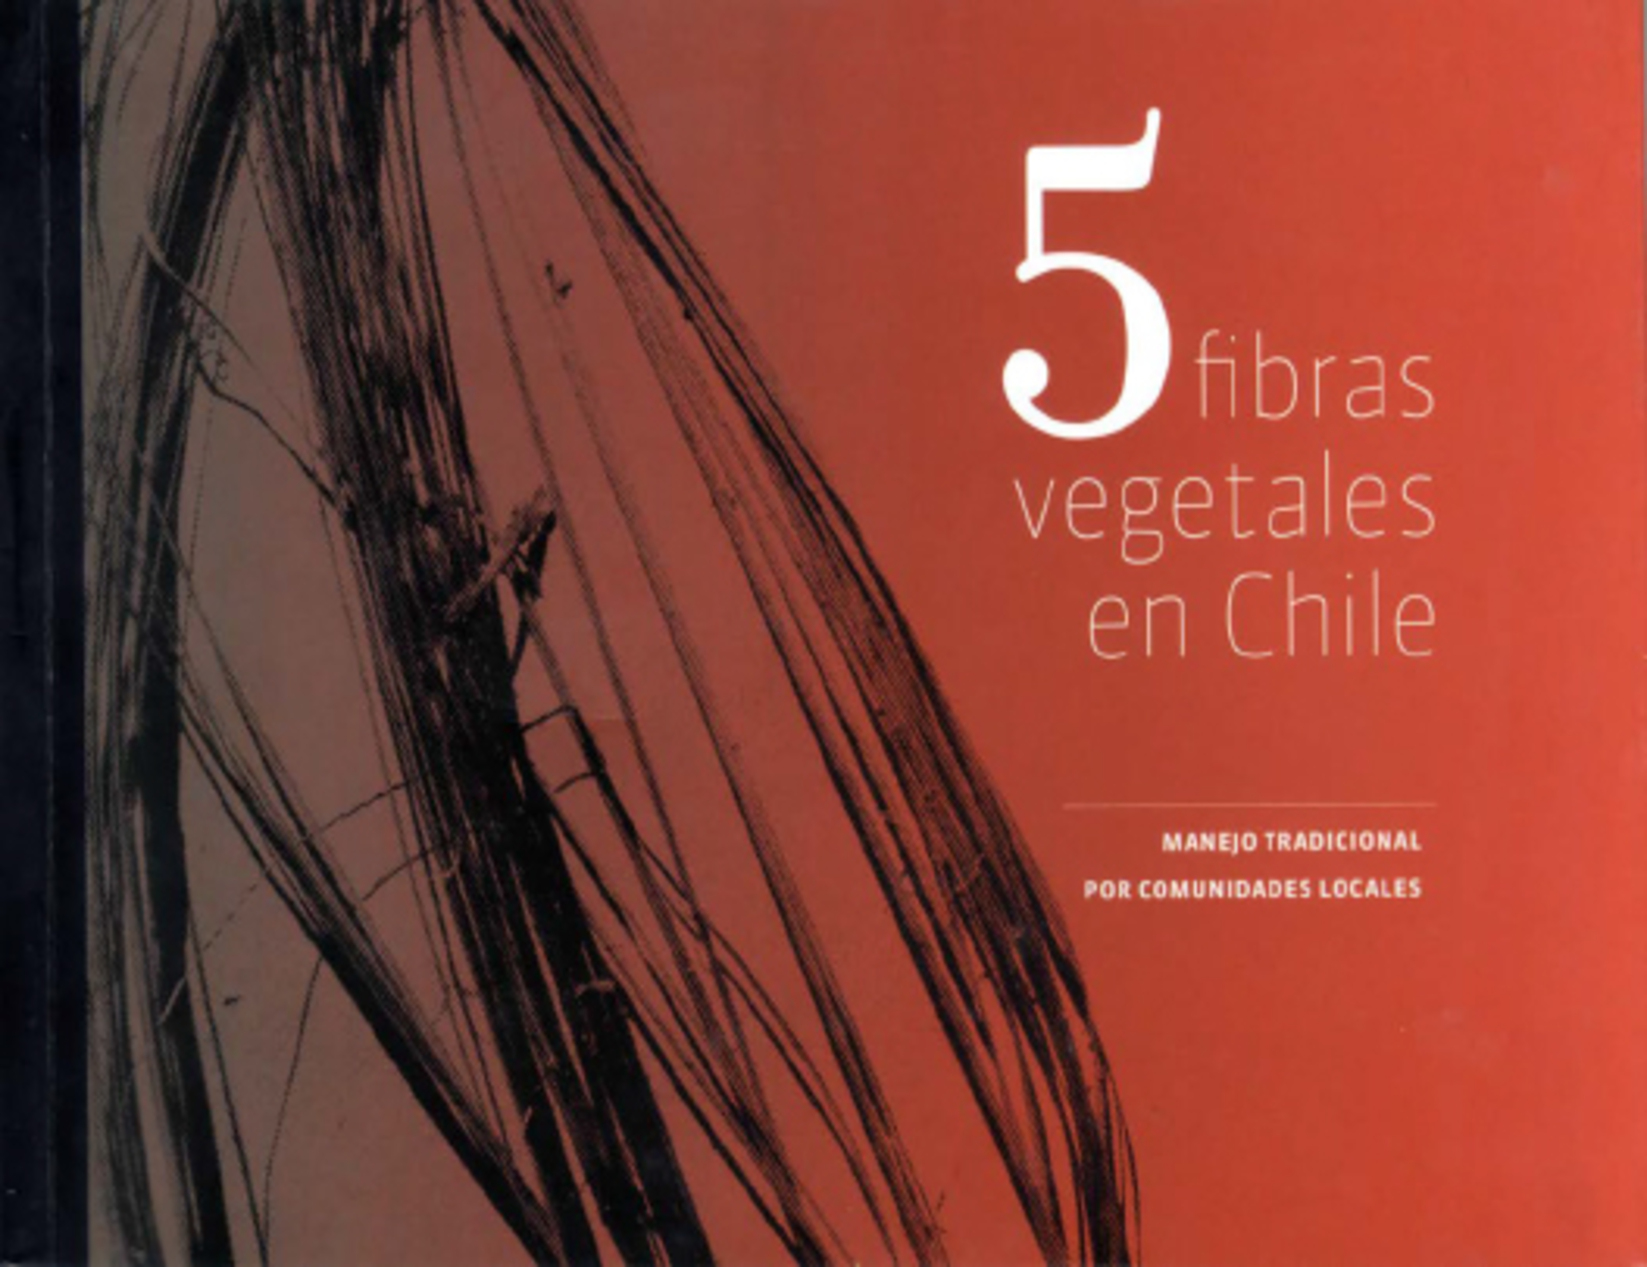 5 fibras vegetales en Chile publicacion artesaniauc UC 1